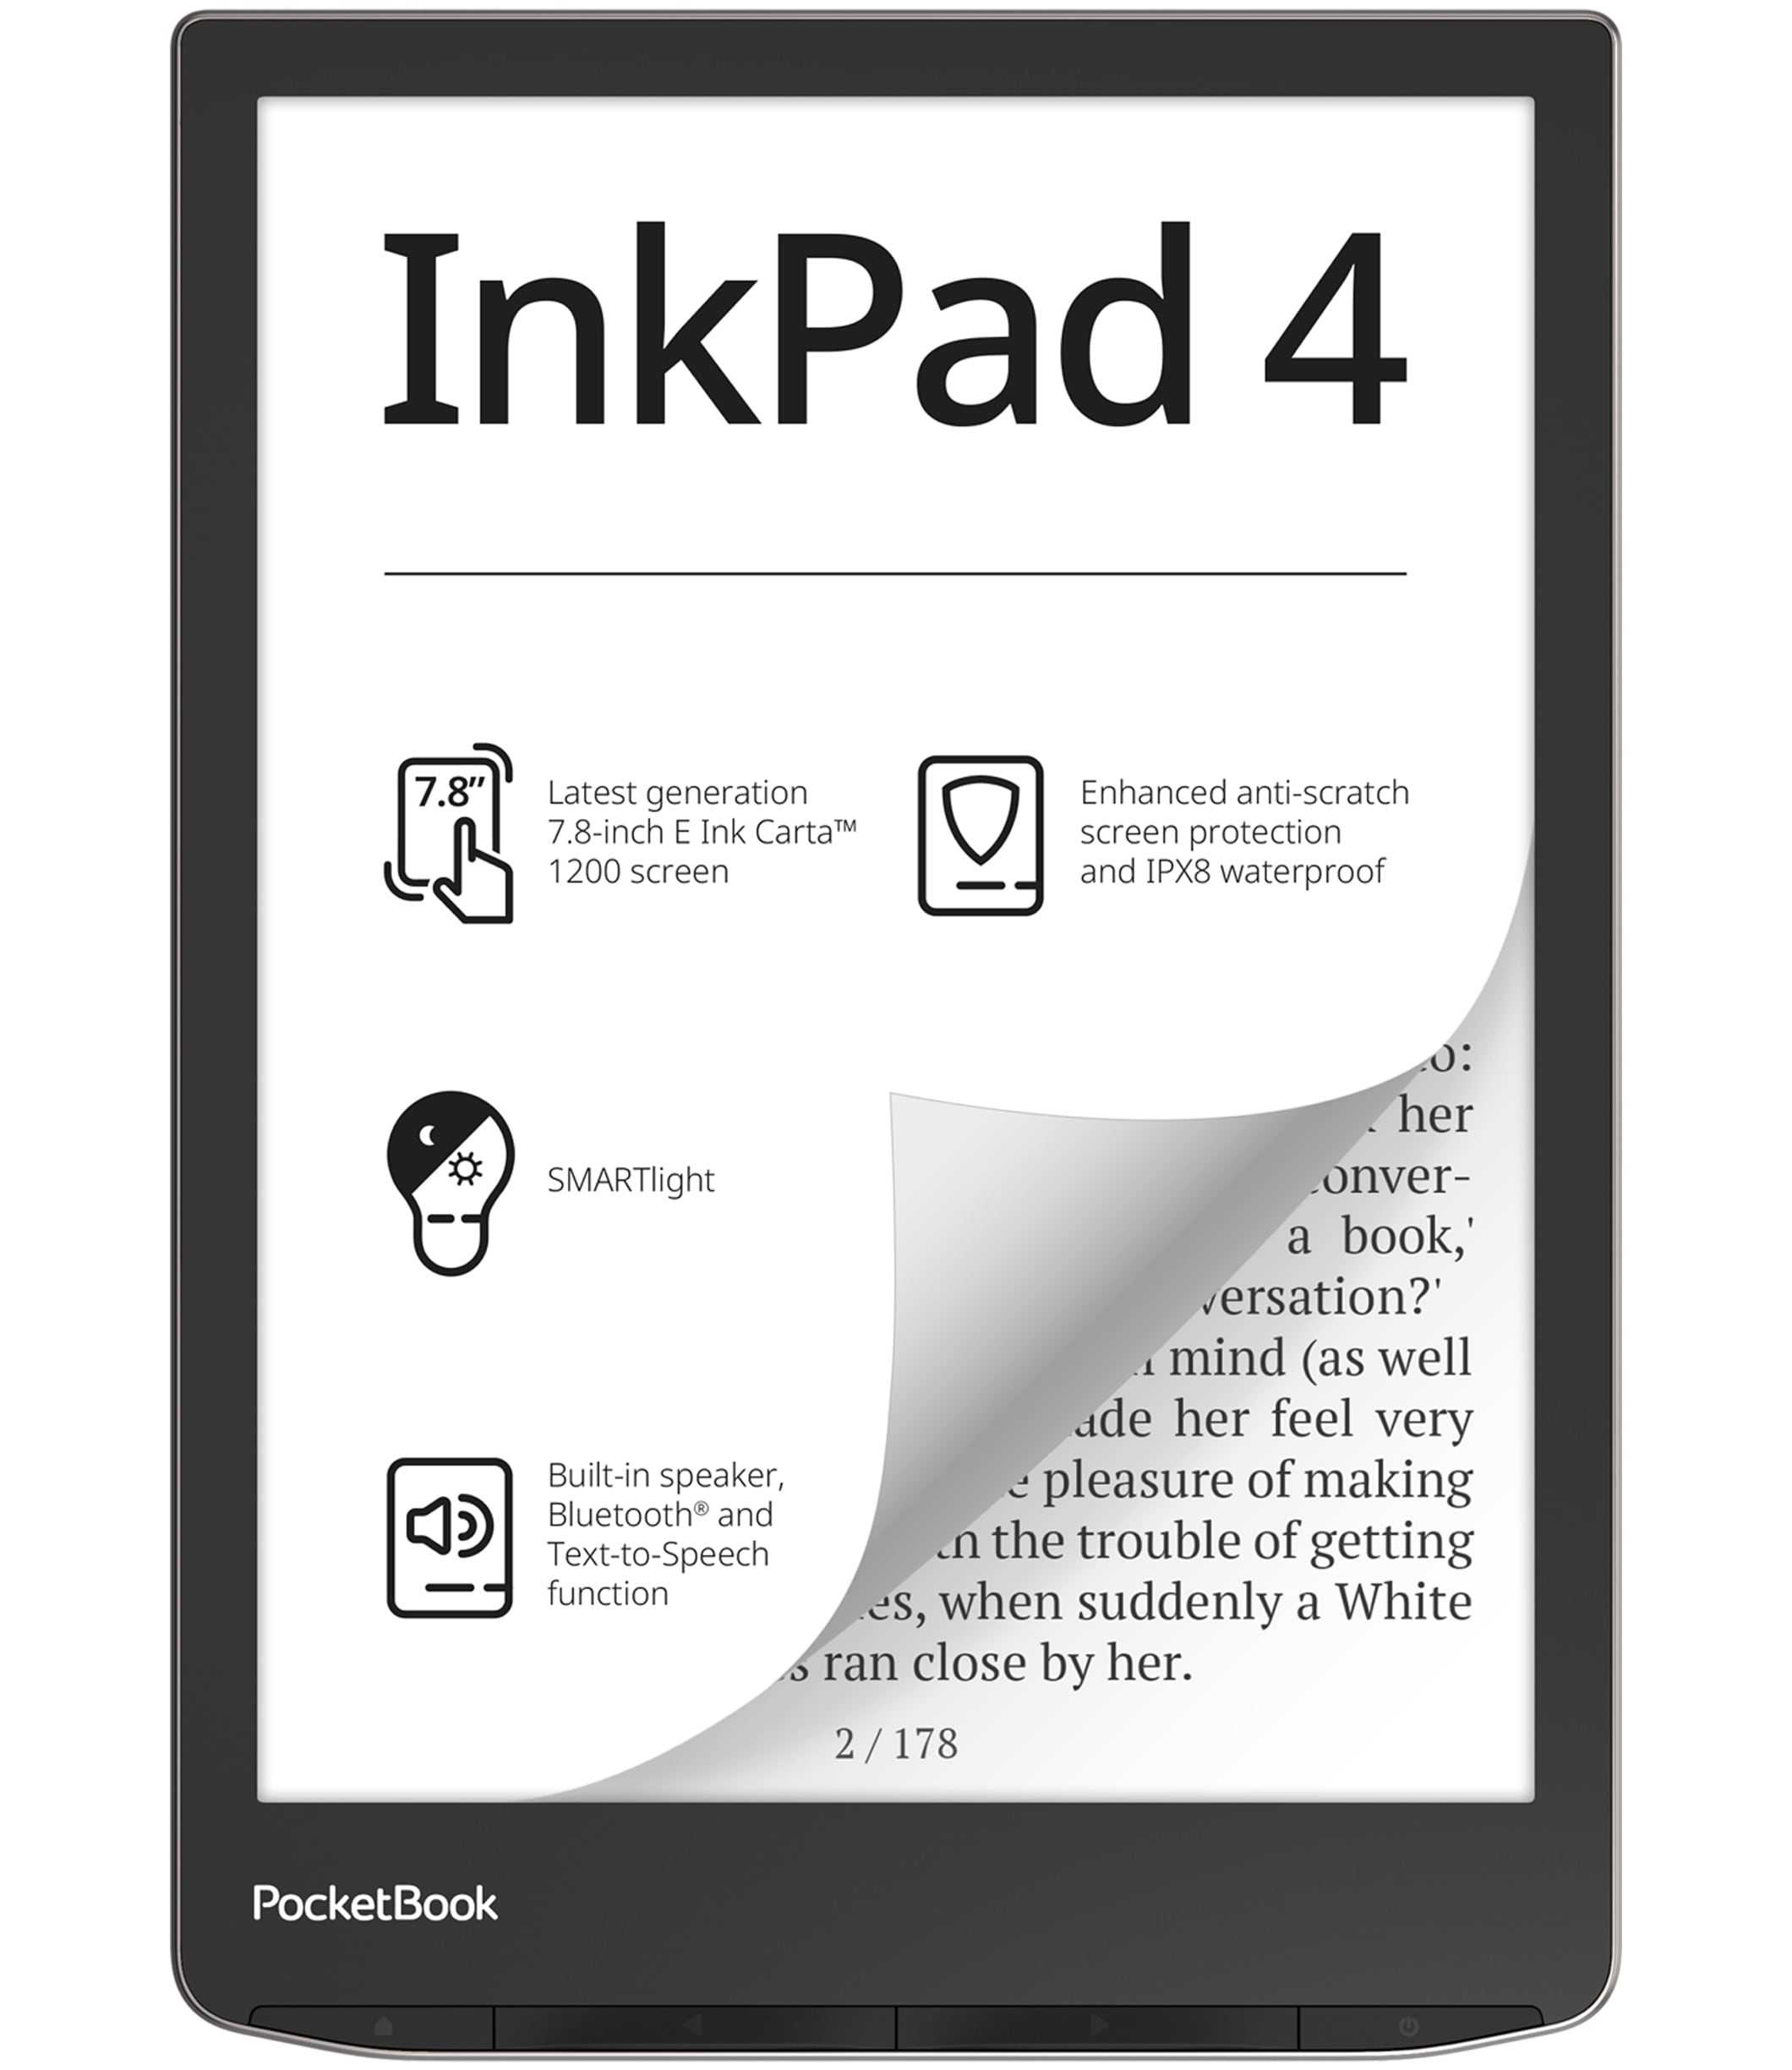 Pocketbook  - E-kirjan lukulaite - Tuotekuva Pocketbook InkPad4 -e-kirjan lukijastaer - Product picture of Pocketbook InkPad 4